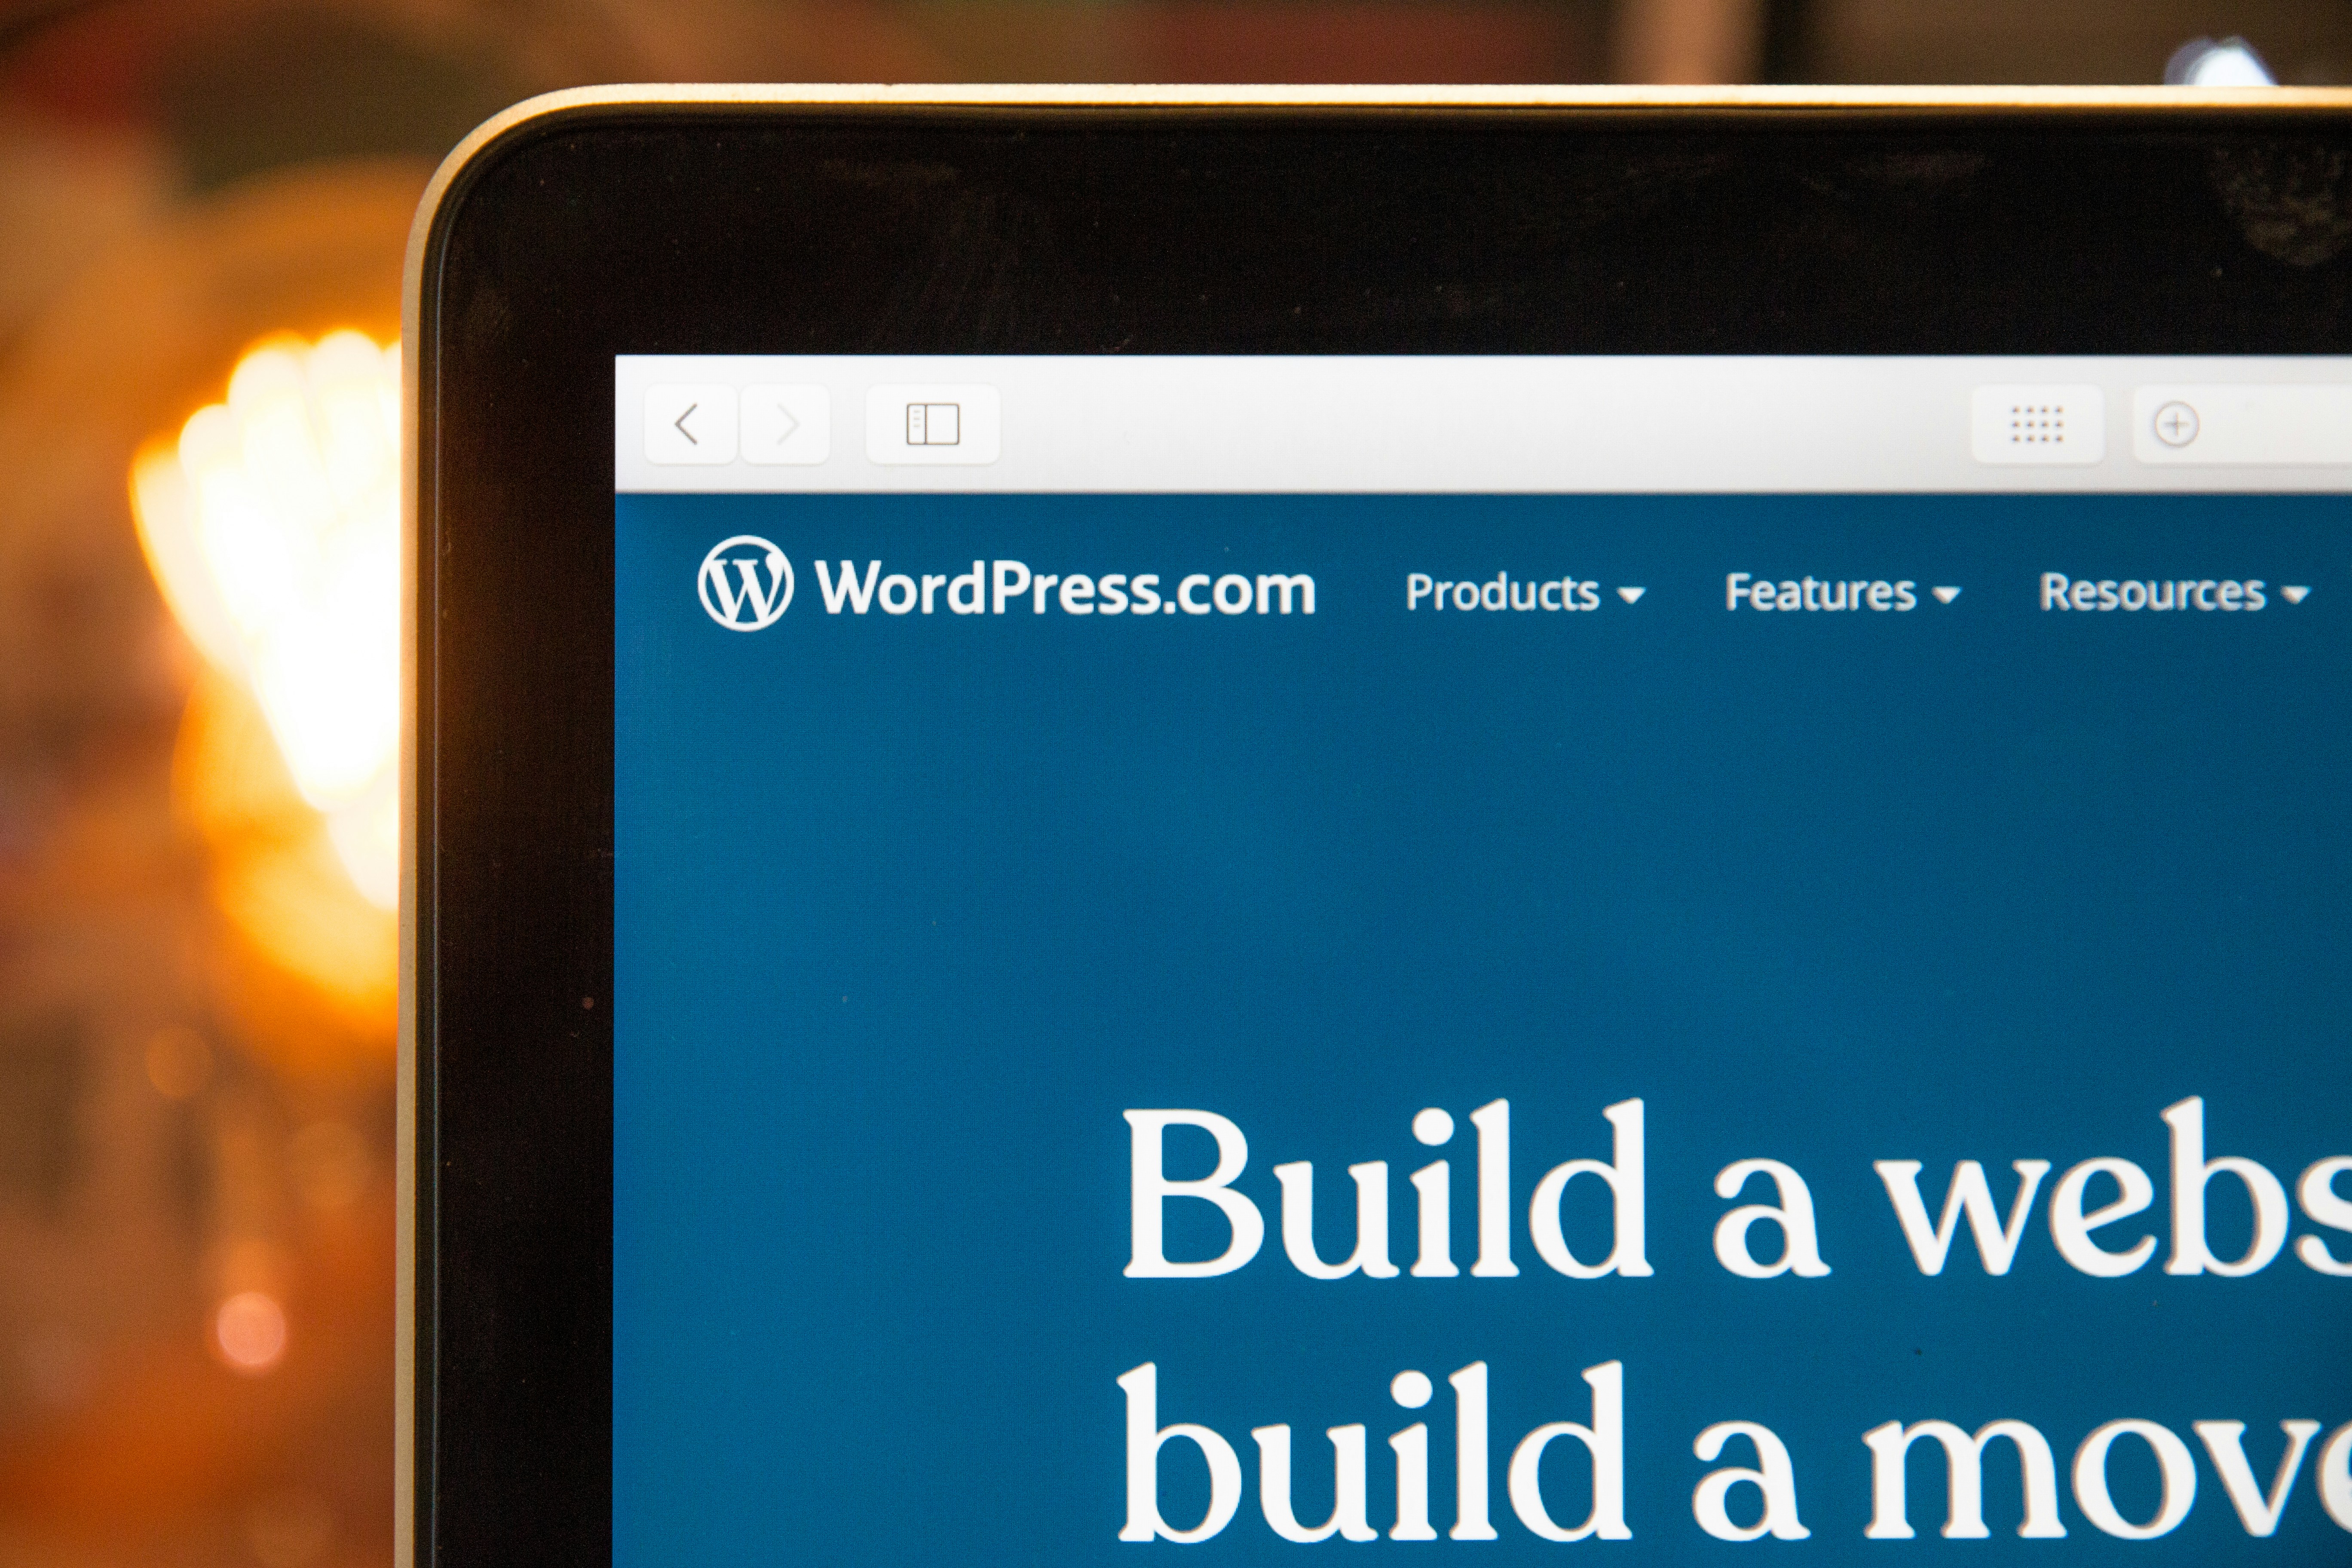 Wordpress:  Build a website, build a movement